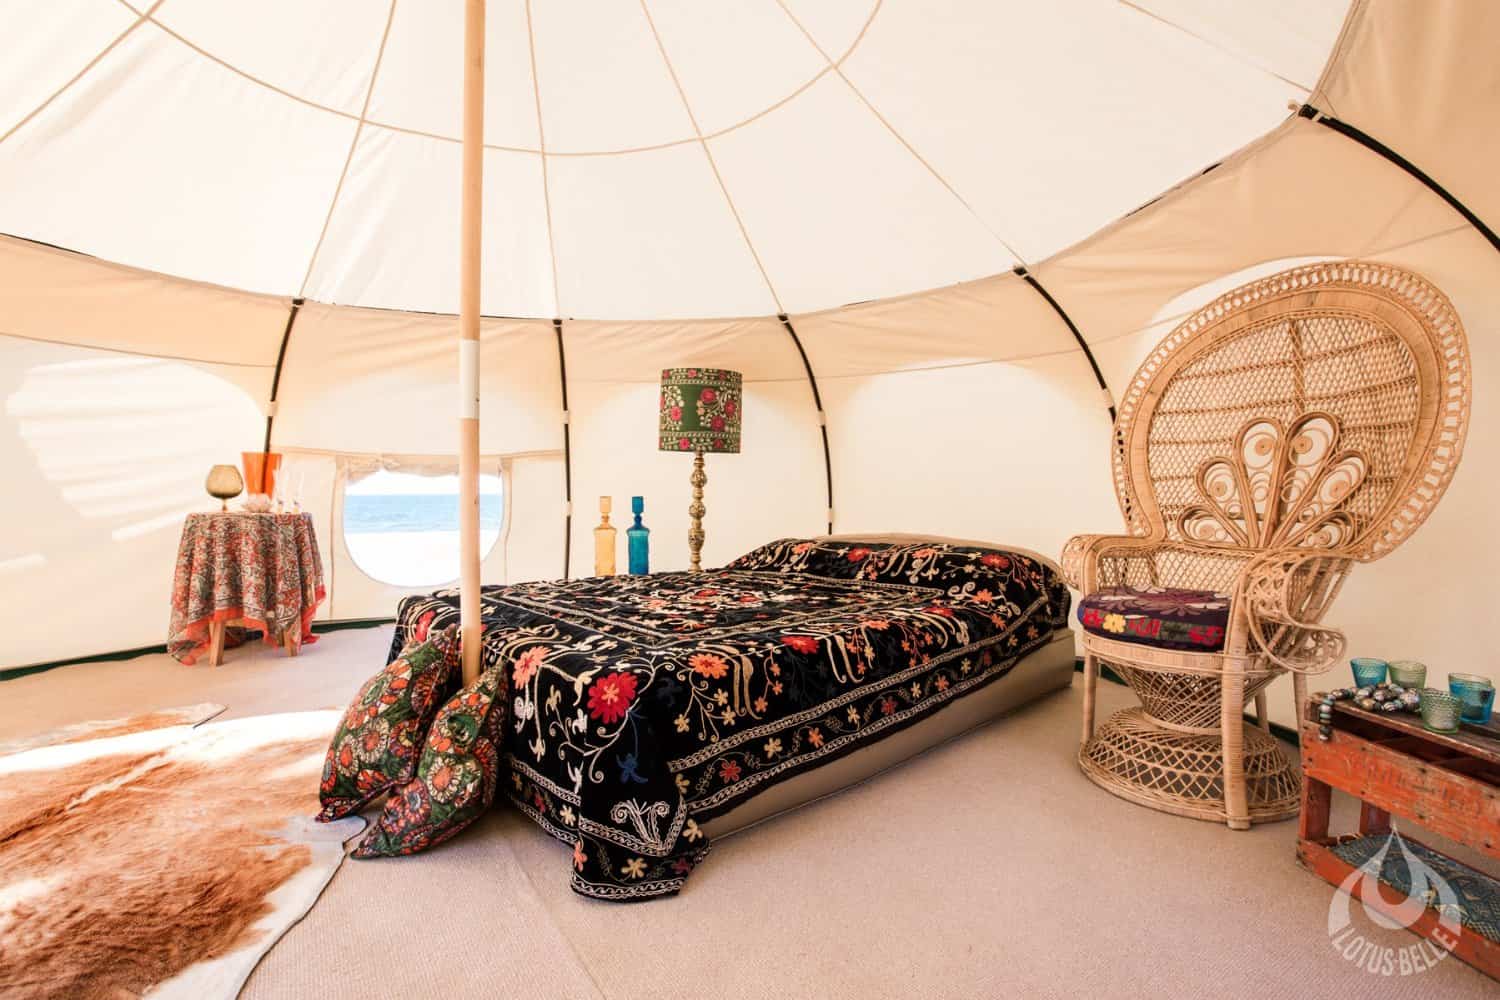 Lotus Belle Original 16ft Tent Additonal Guest Room in Your Garden